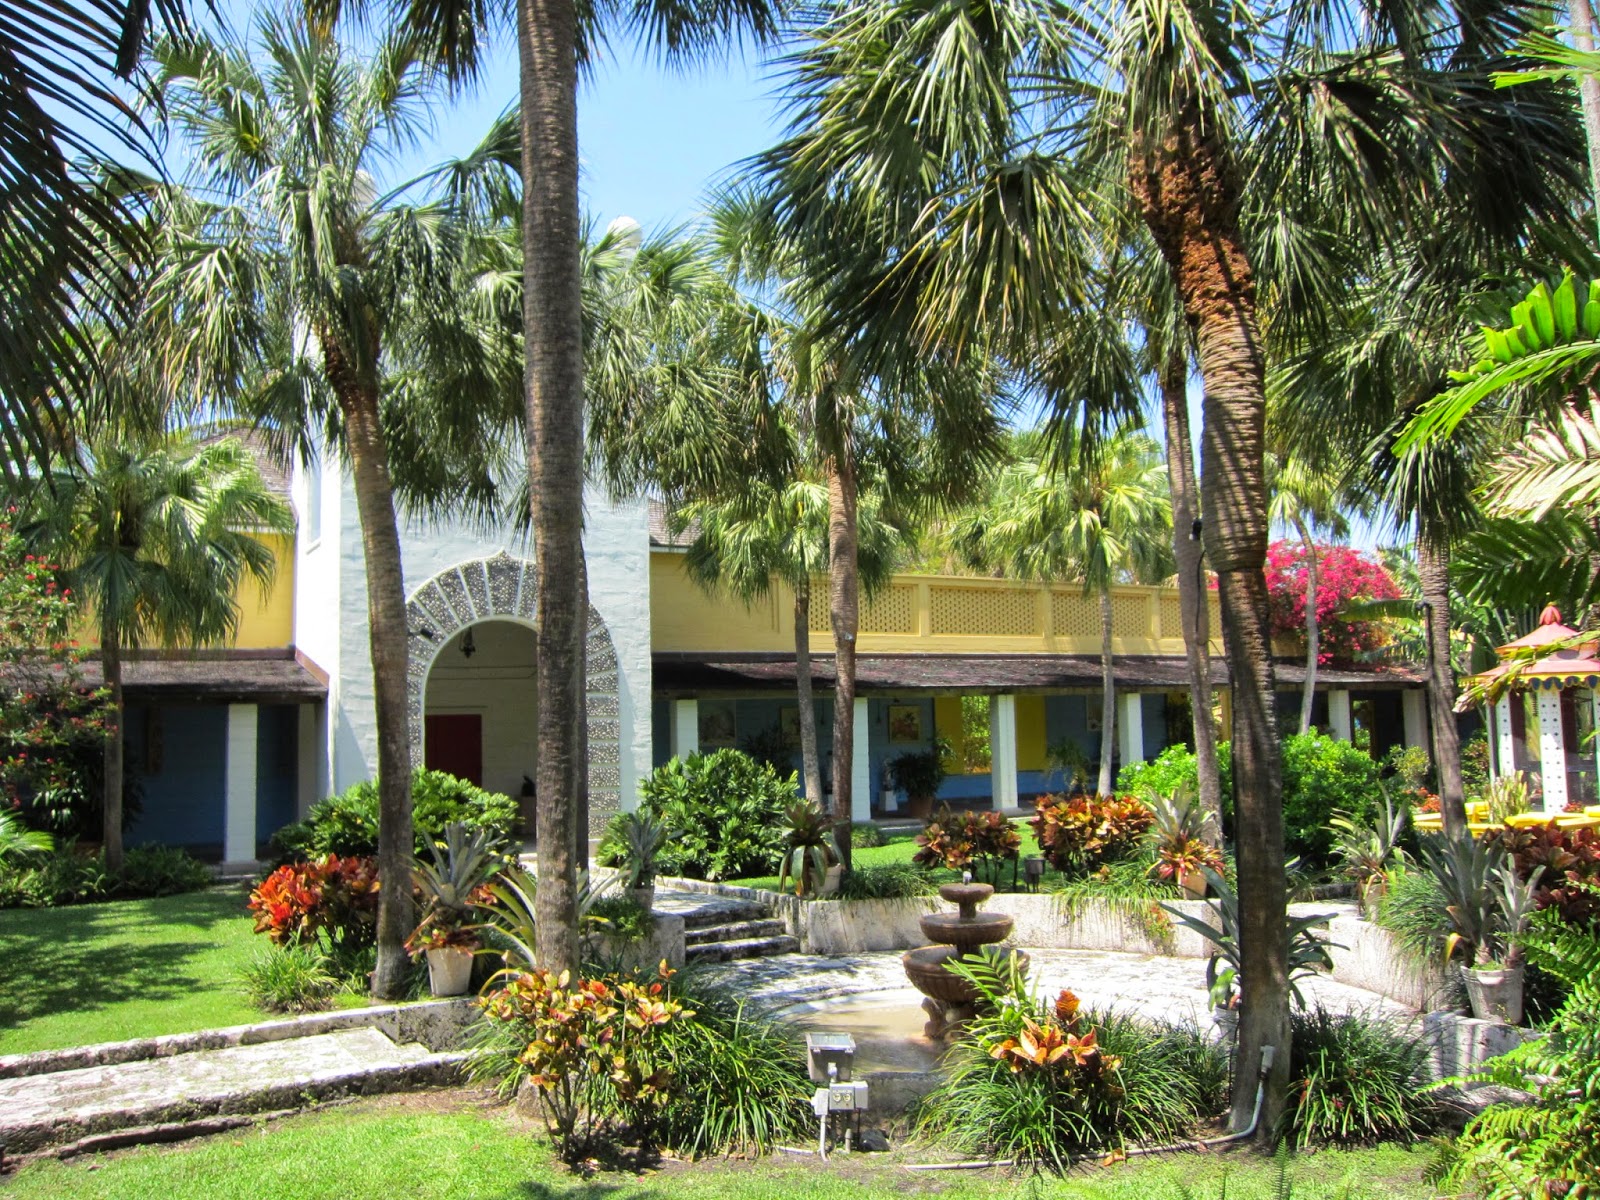 Bonnet House Museum & Gardens em Fort Lauderdake